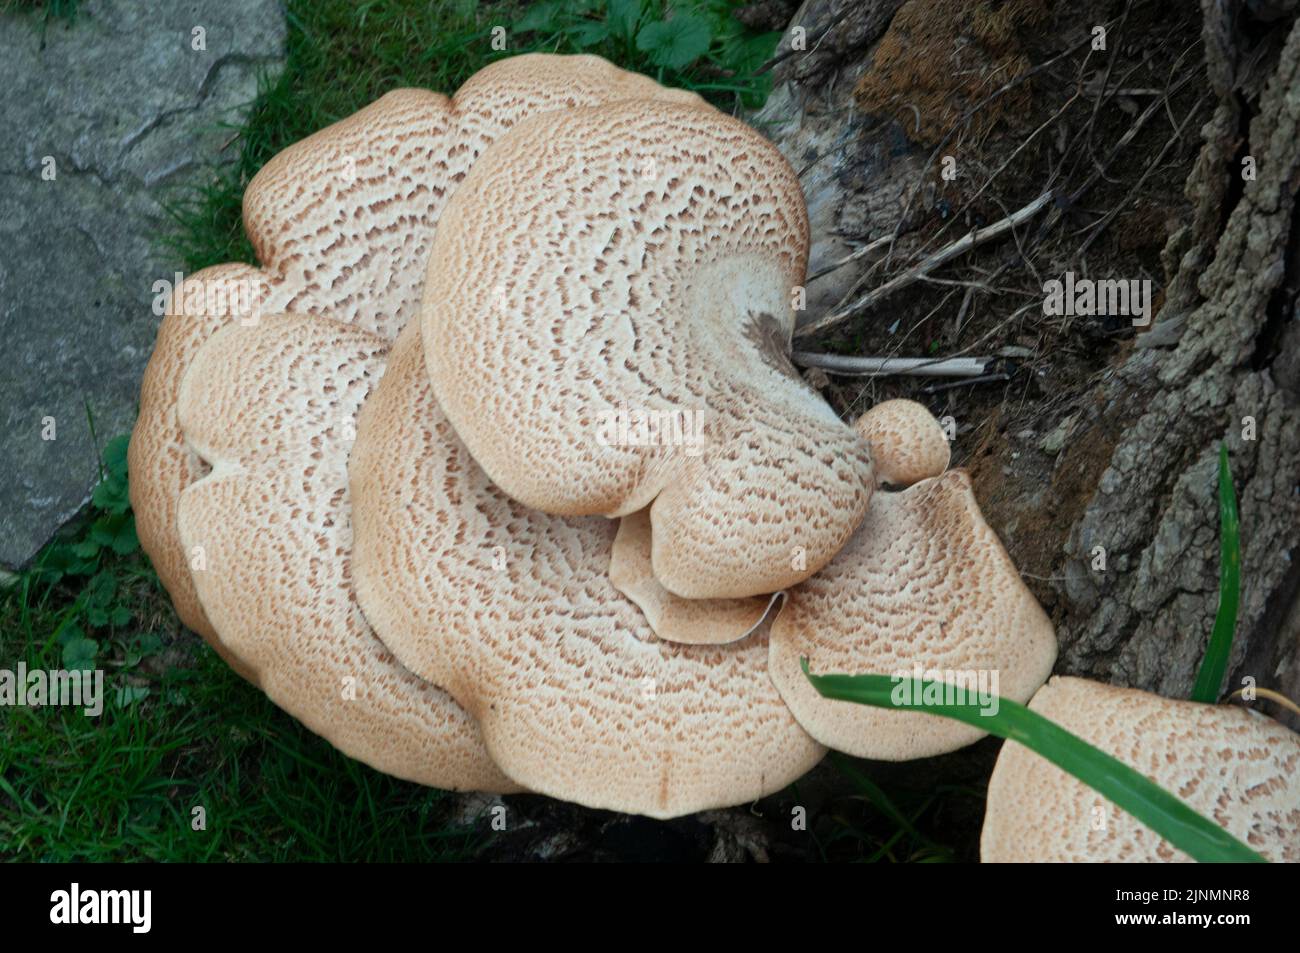 Large mushroom growing on trees stump. Stock Photo